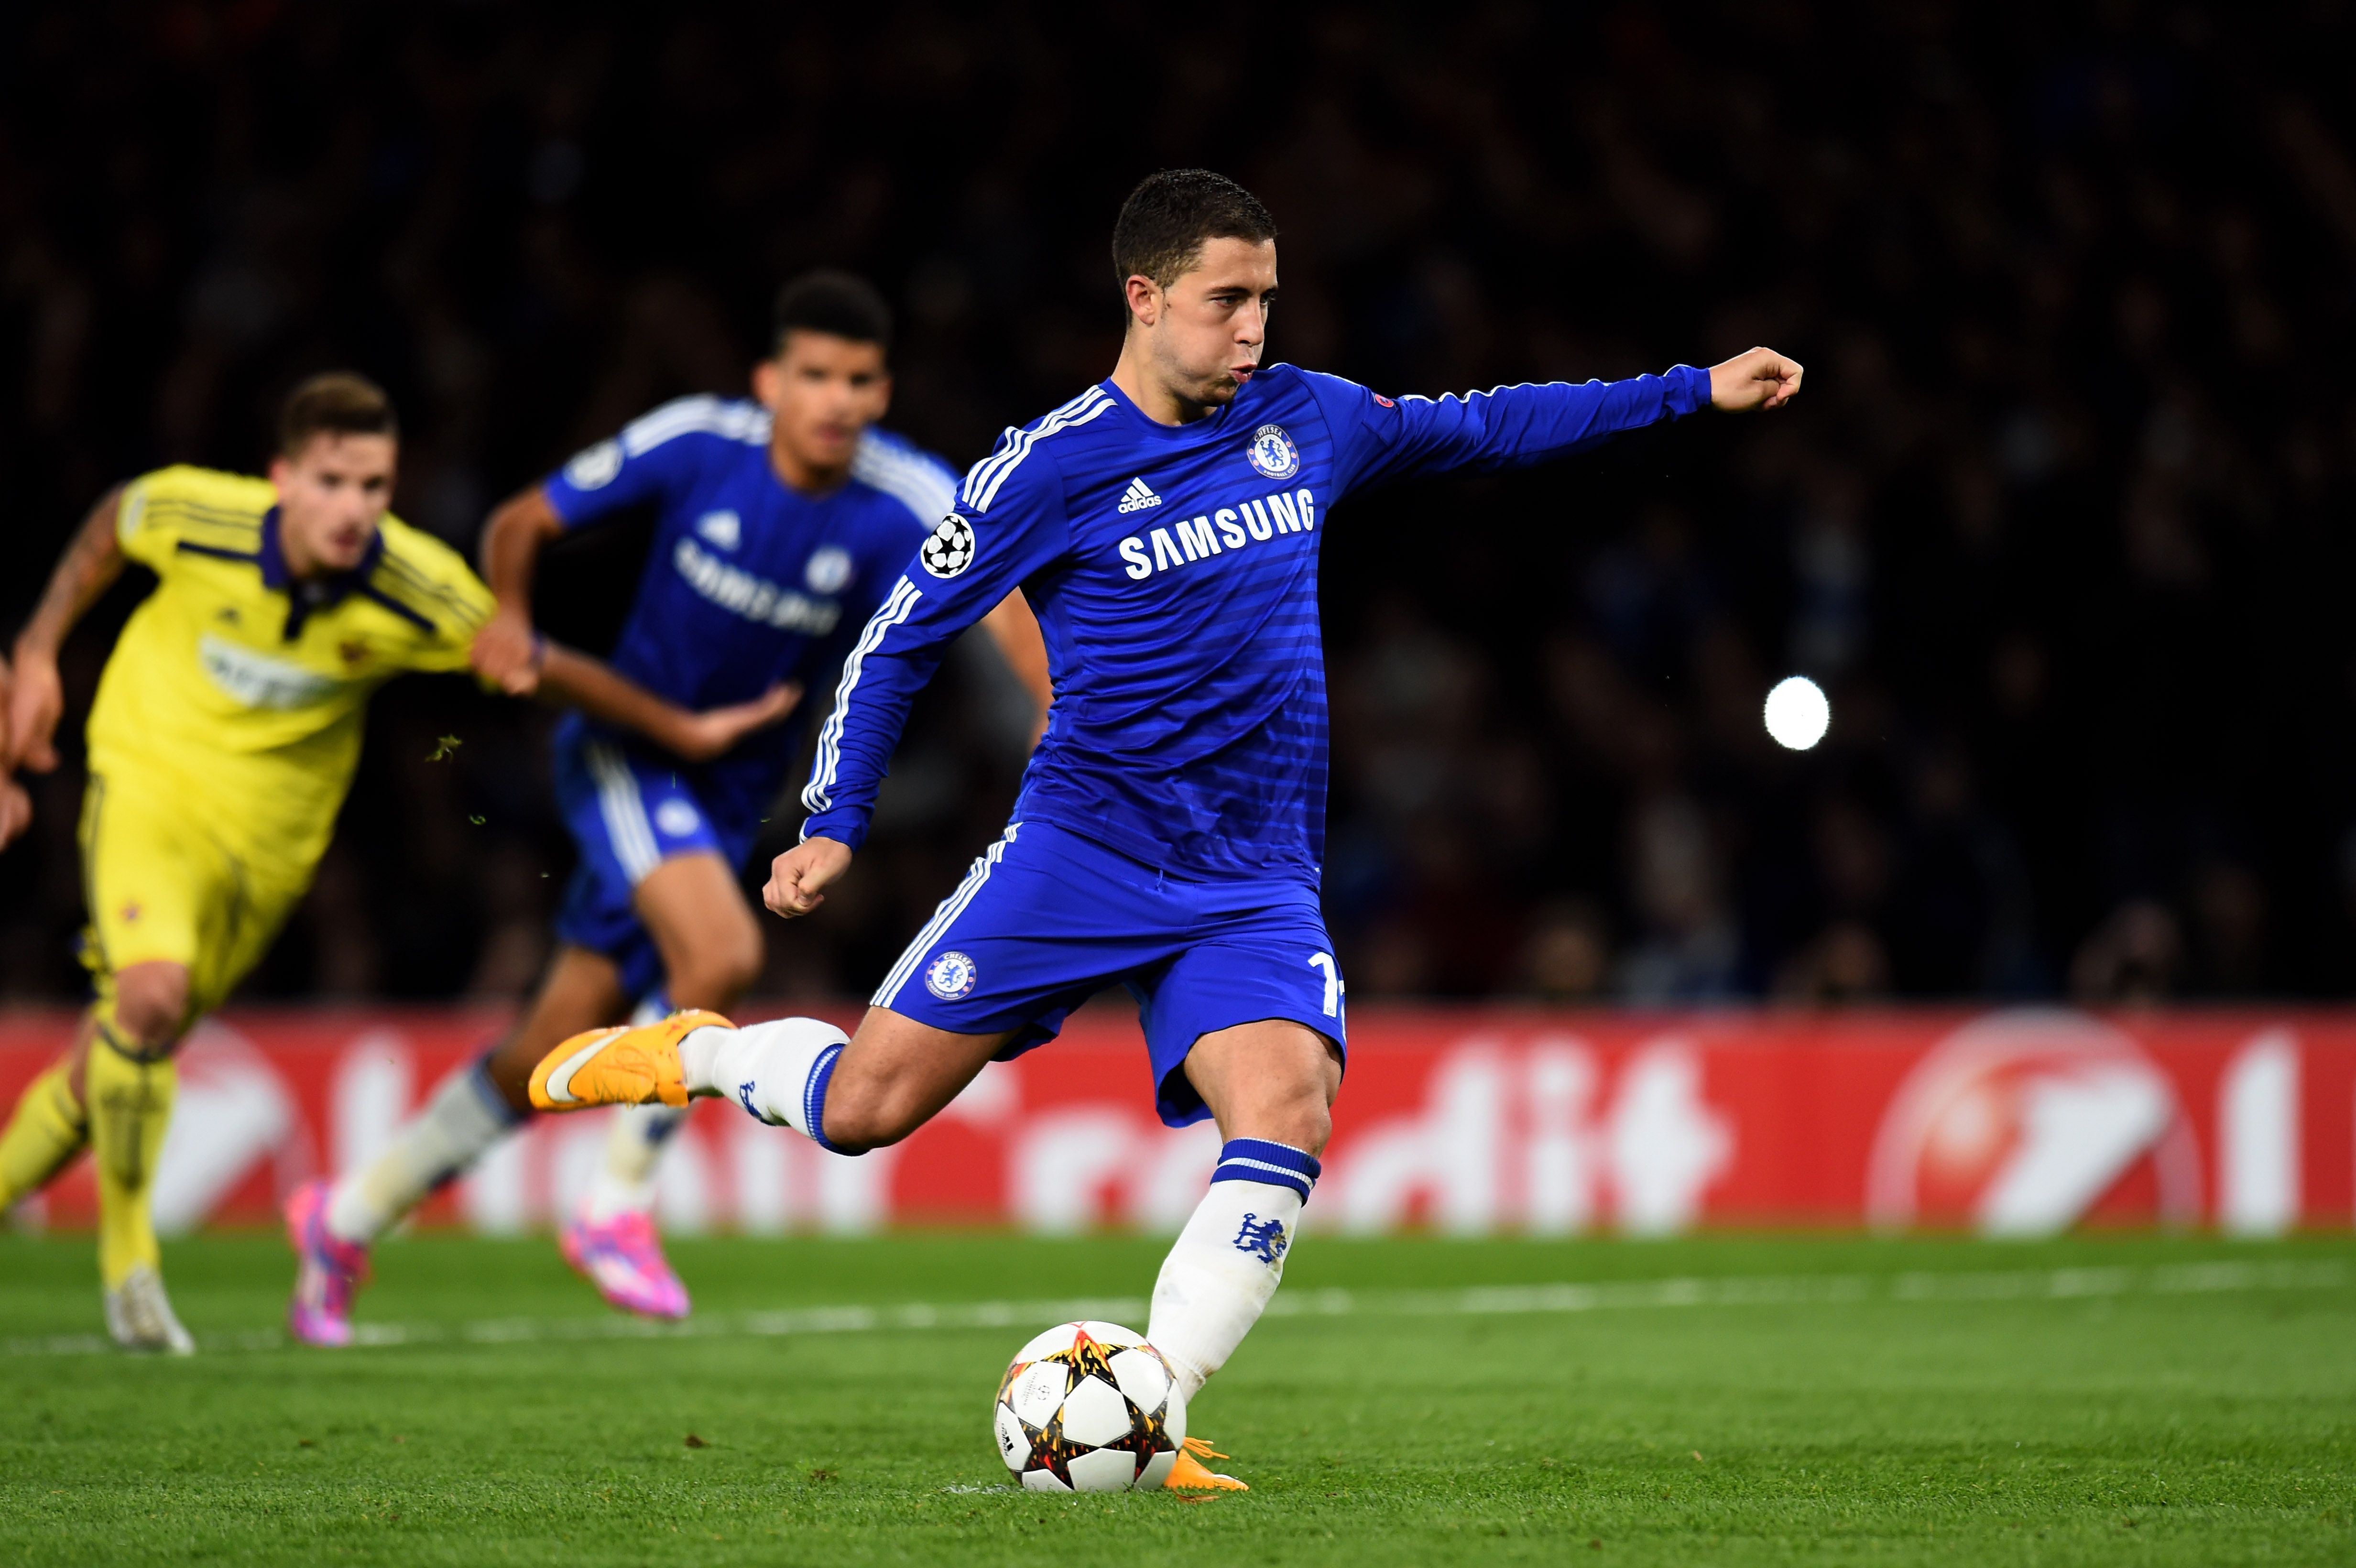 Eden Hazard scores a goal for Chelsea